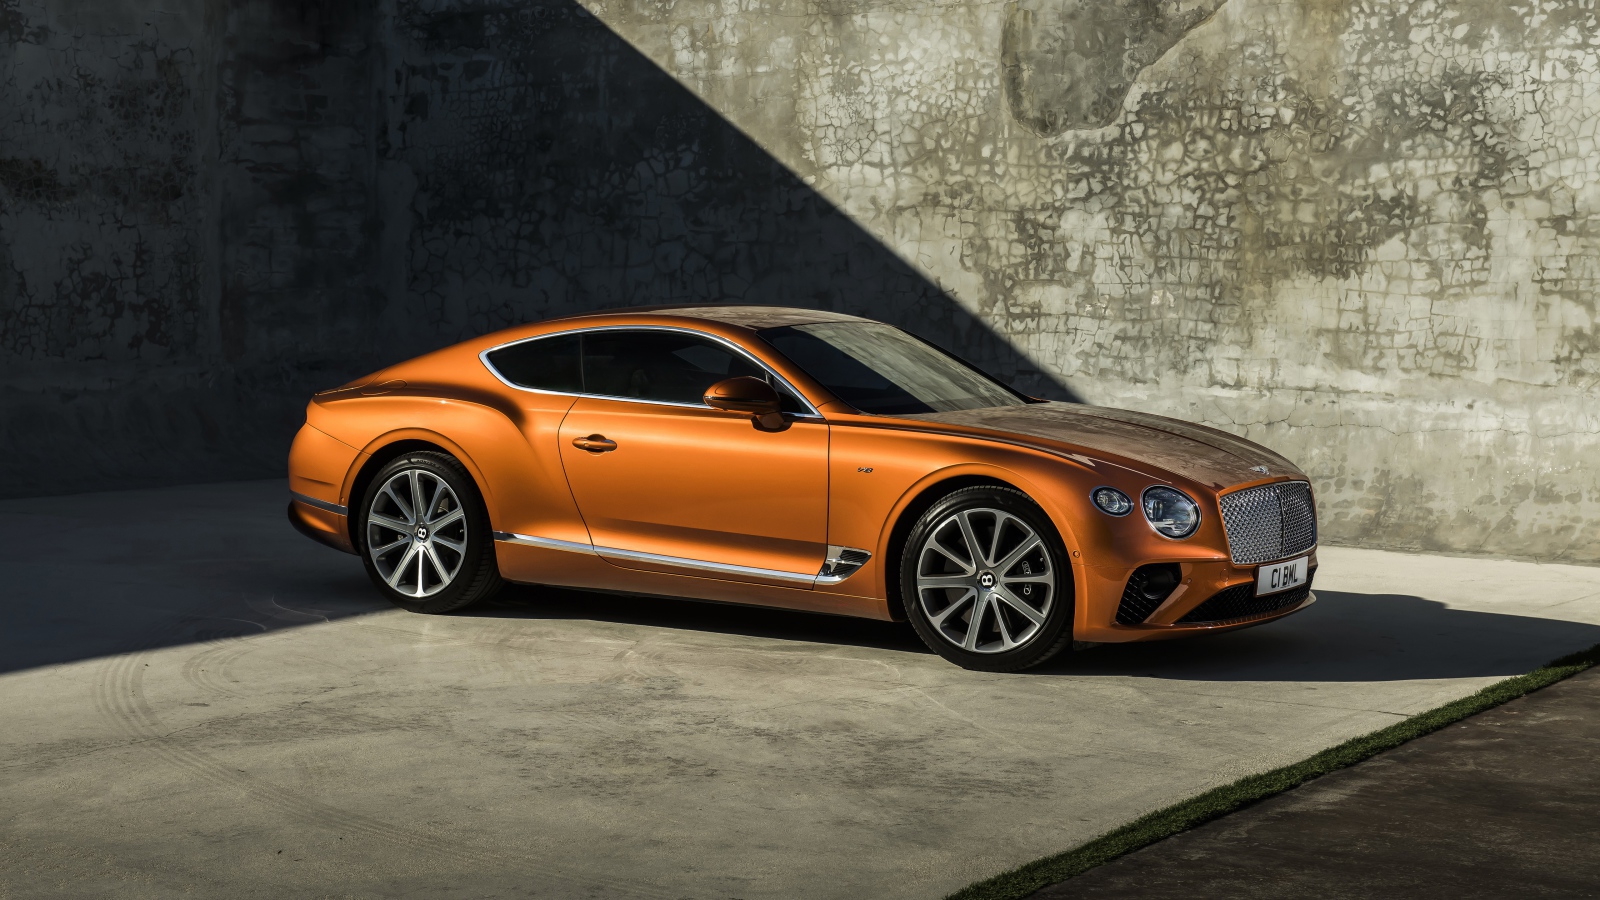 Оранжевый автомобиль Bentley Continental GT V8, 2019 года на фоне стены